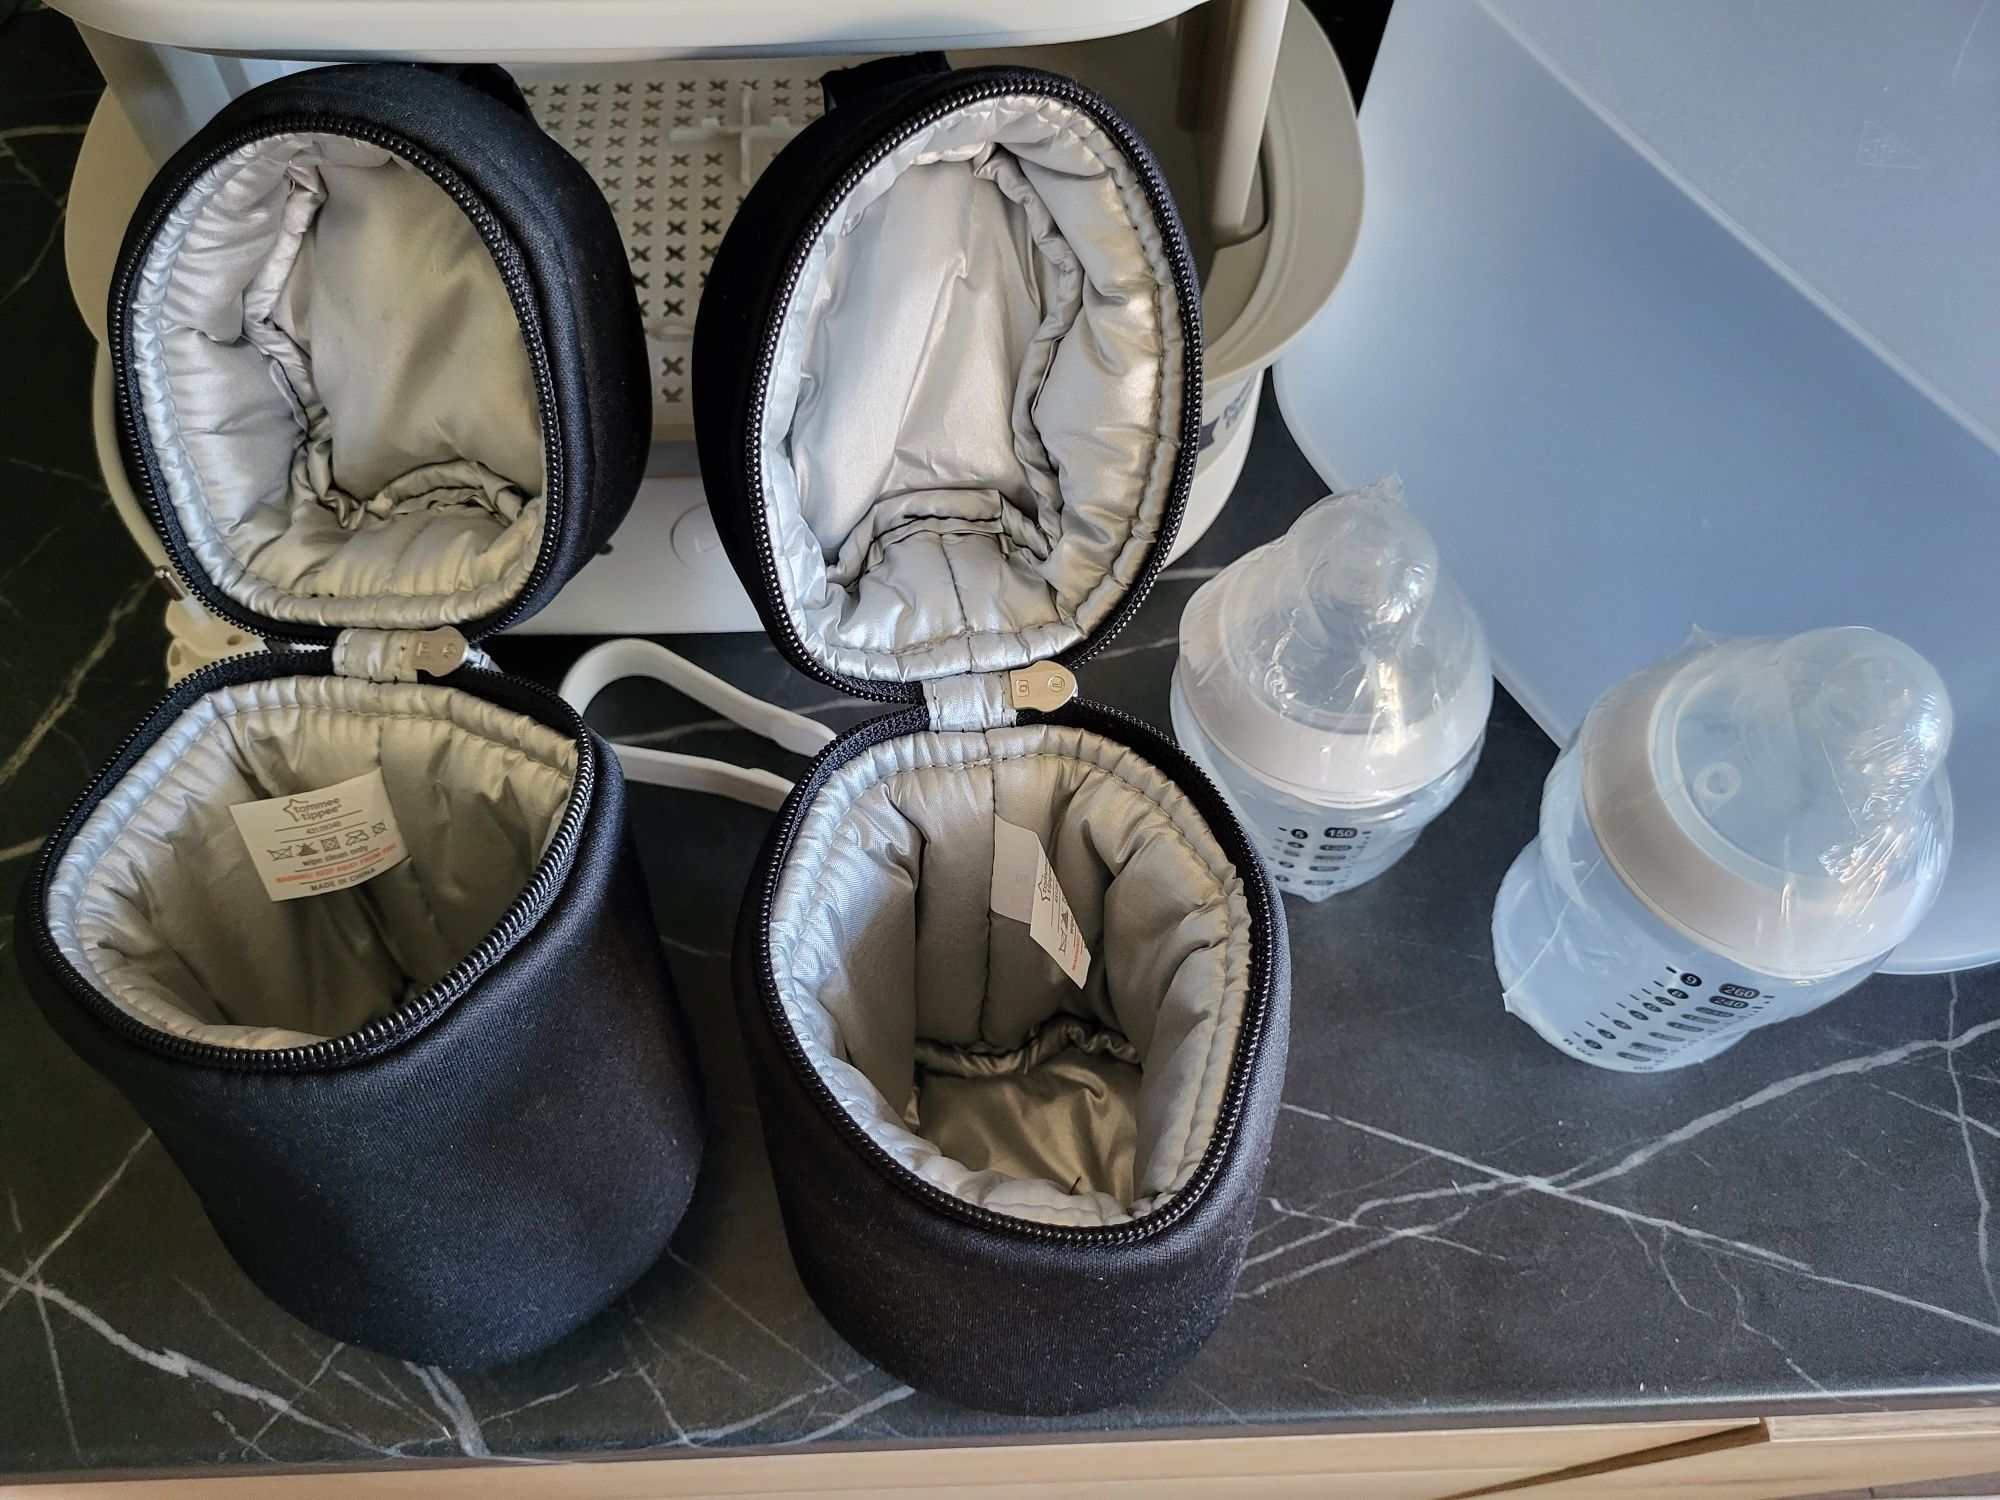 Sterilizator Tommee Tippee și accesorii : biberon,geantă termoizolantă